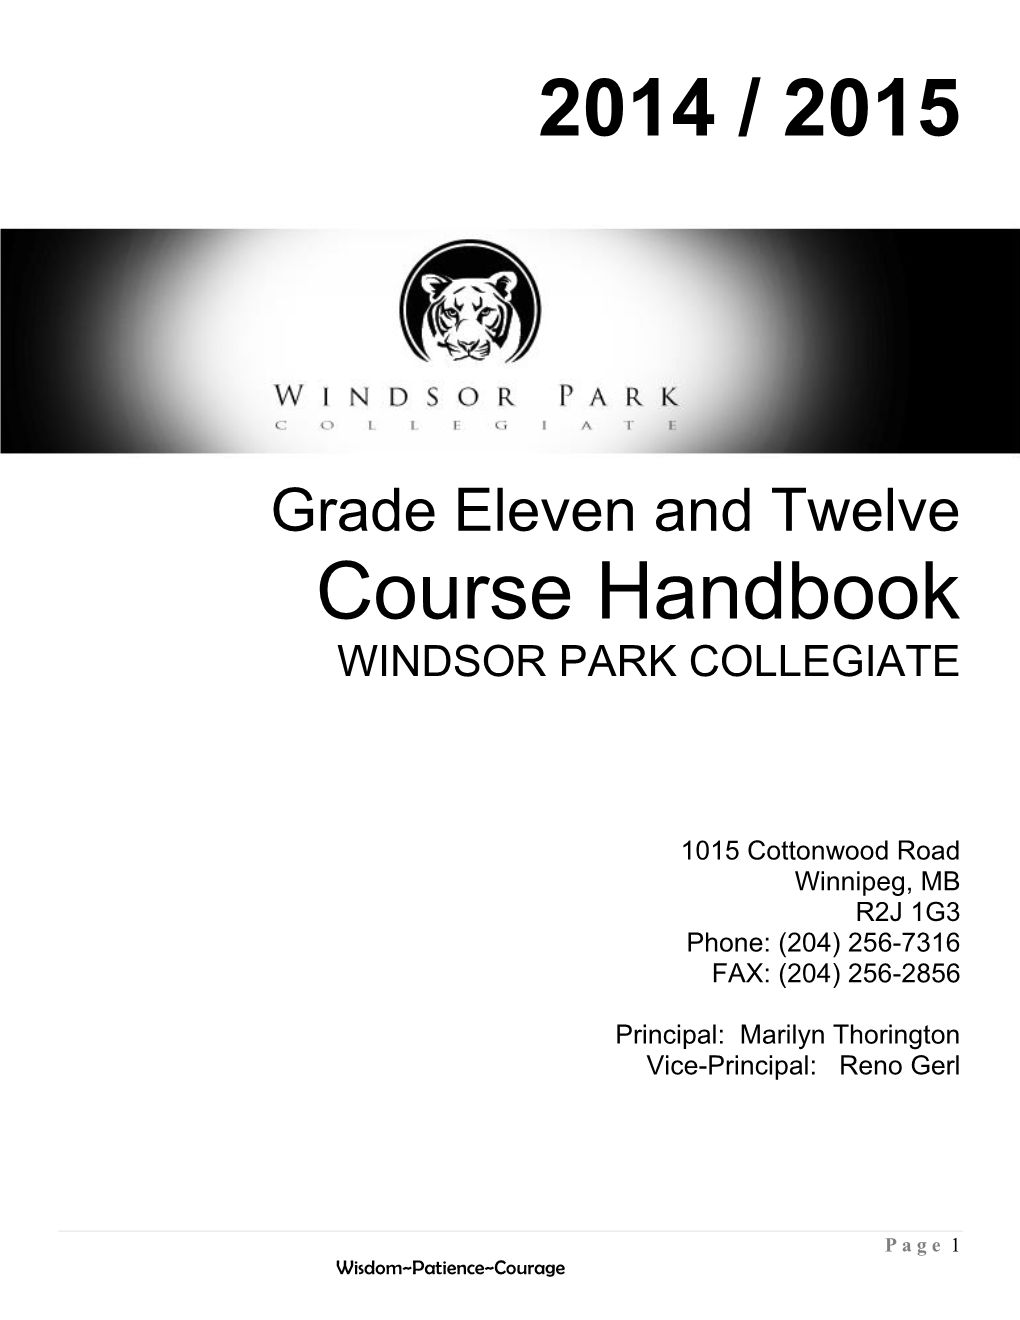 2014 / 2015 Course Handbook